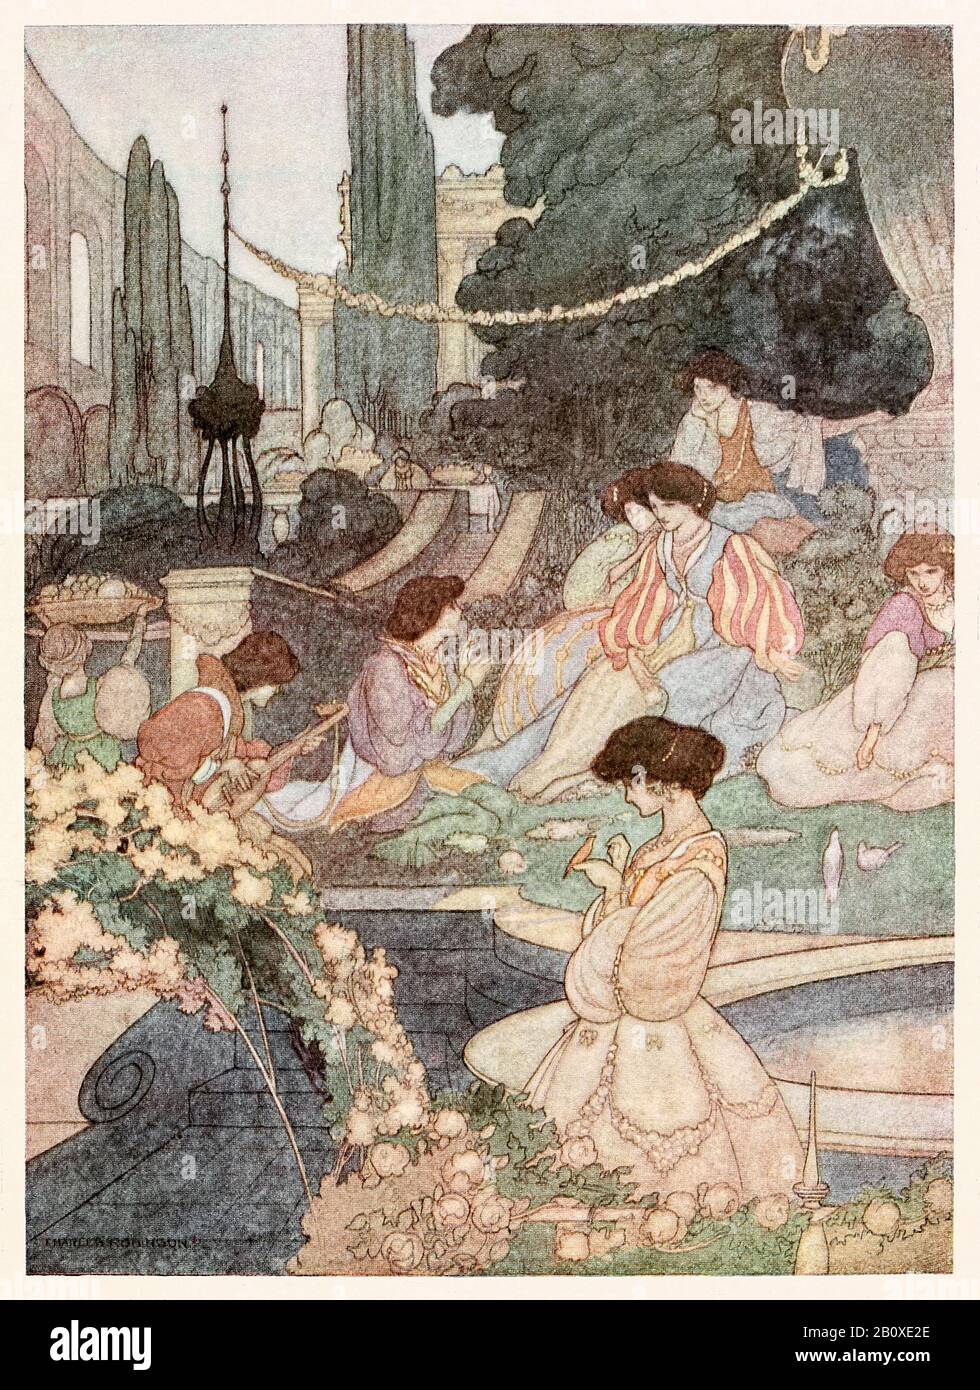 « Le palais de sans-souci » du Prince Heureux et Des autres Tales d'Oscar Wilde (1854-1900) illustré par Charles Robinson (1870-1937). Voir plus d'informations ci-dessous. Banque D'Images